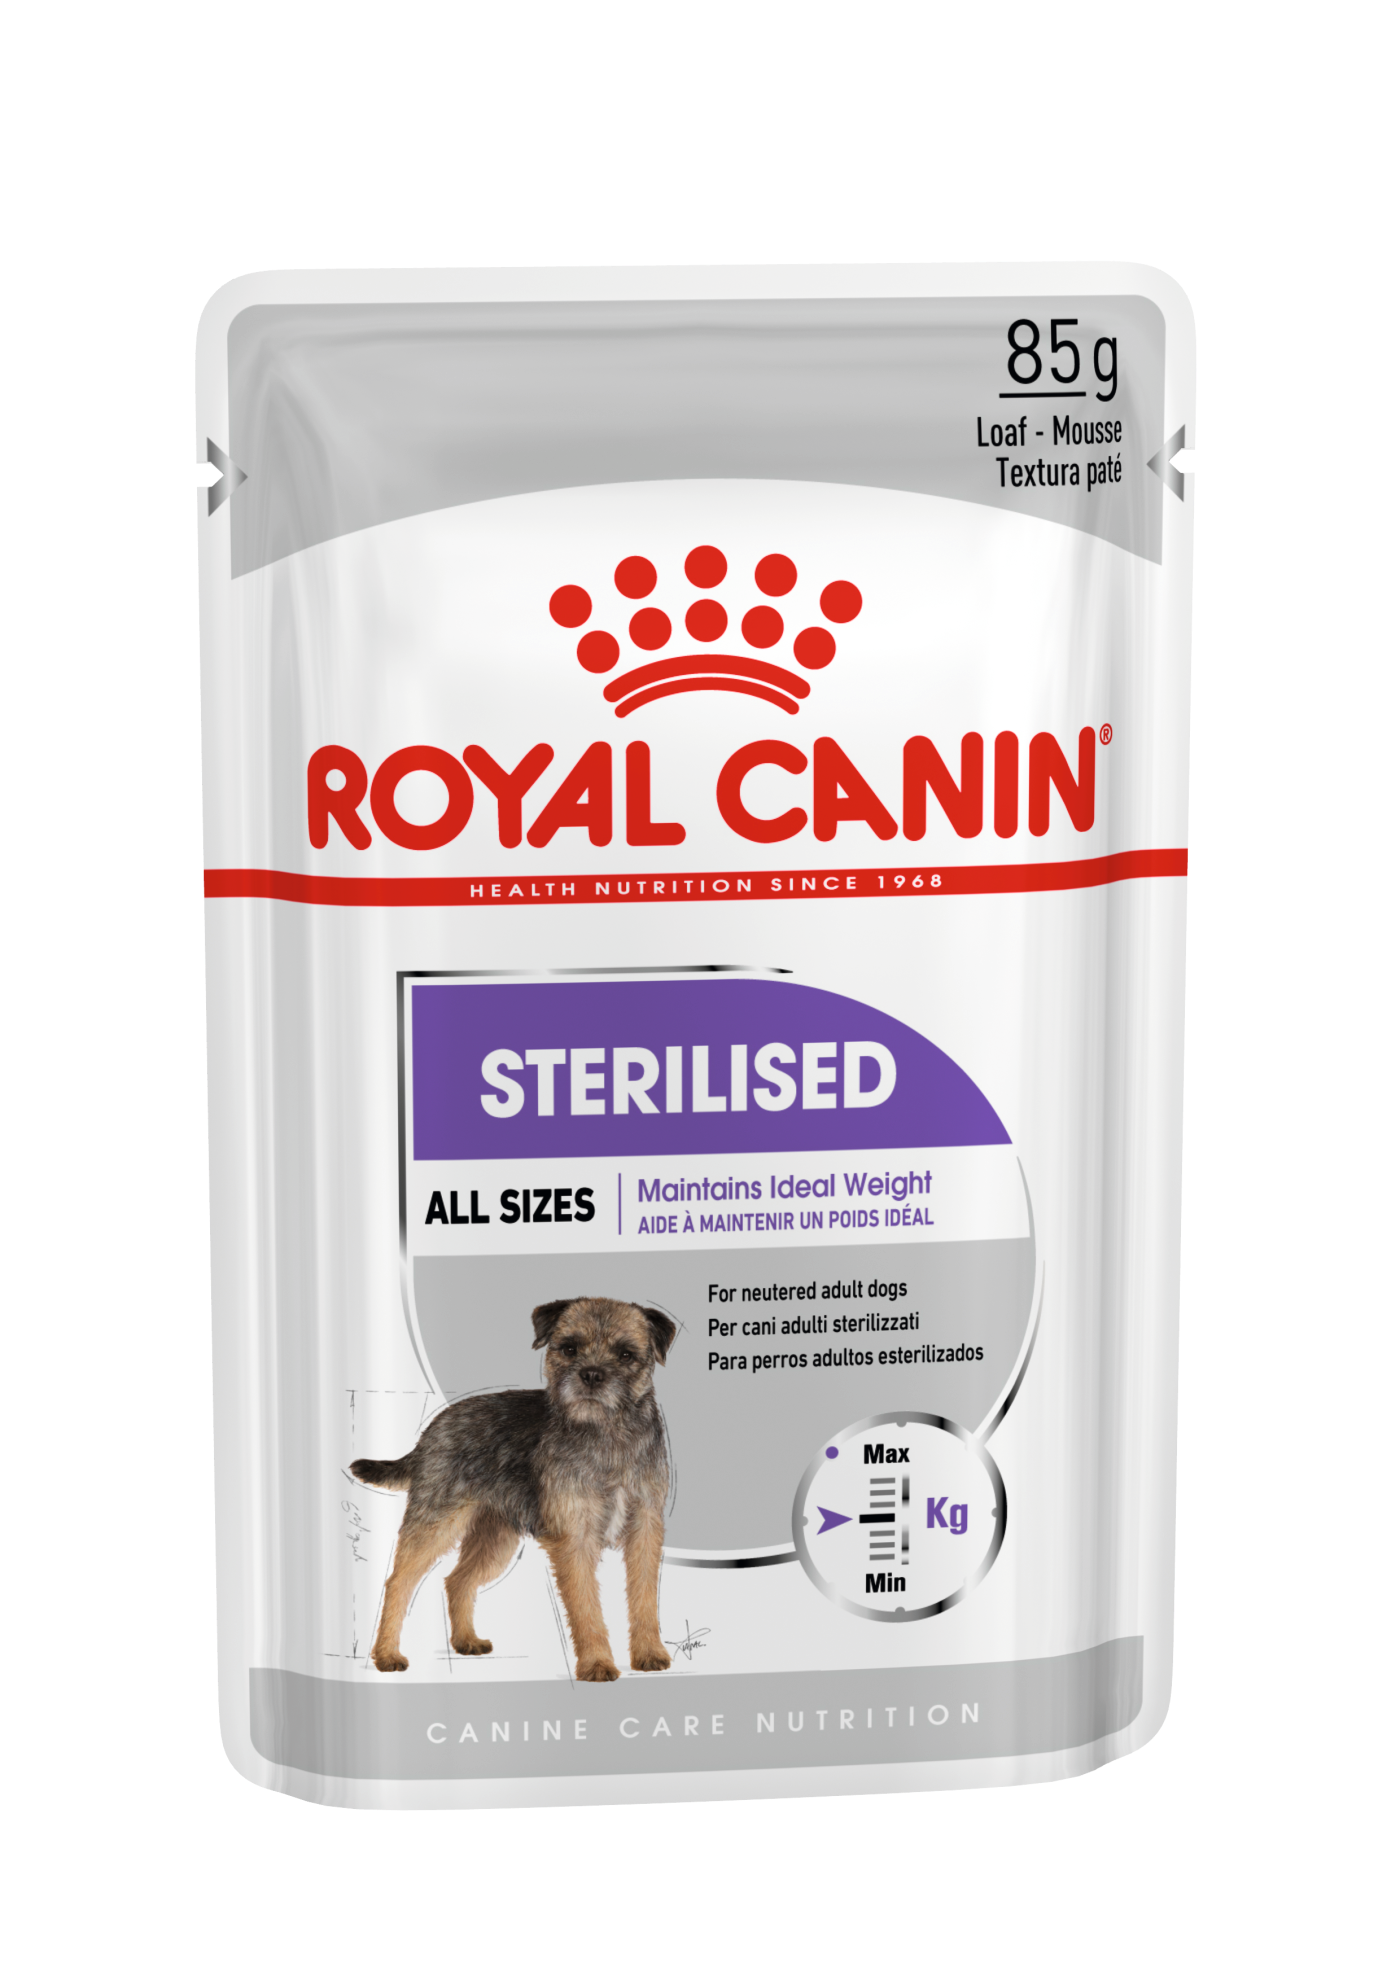 royal canin sterilized cat